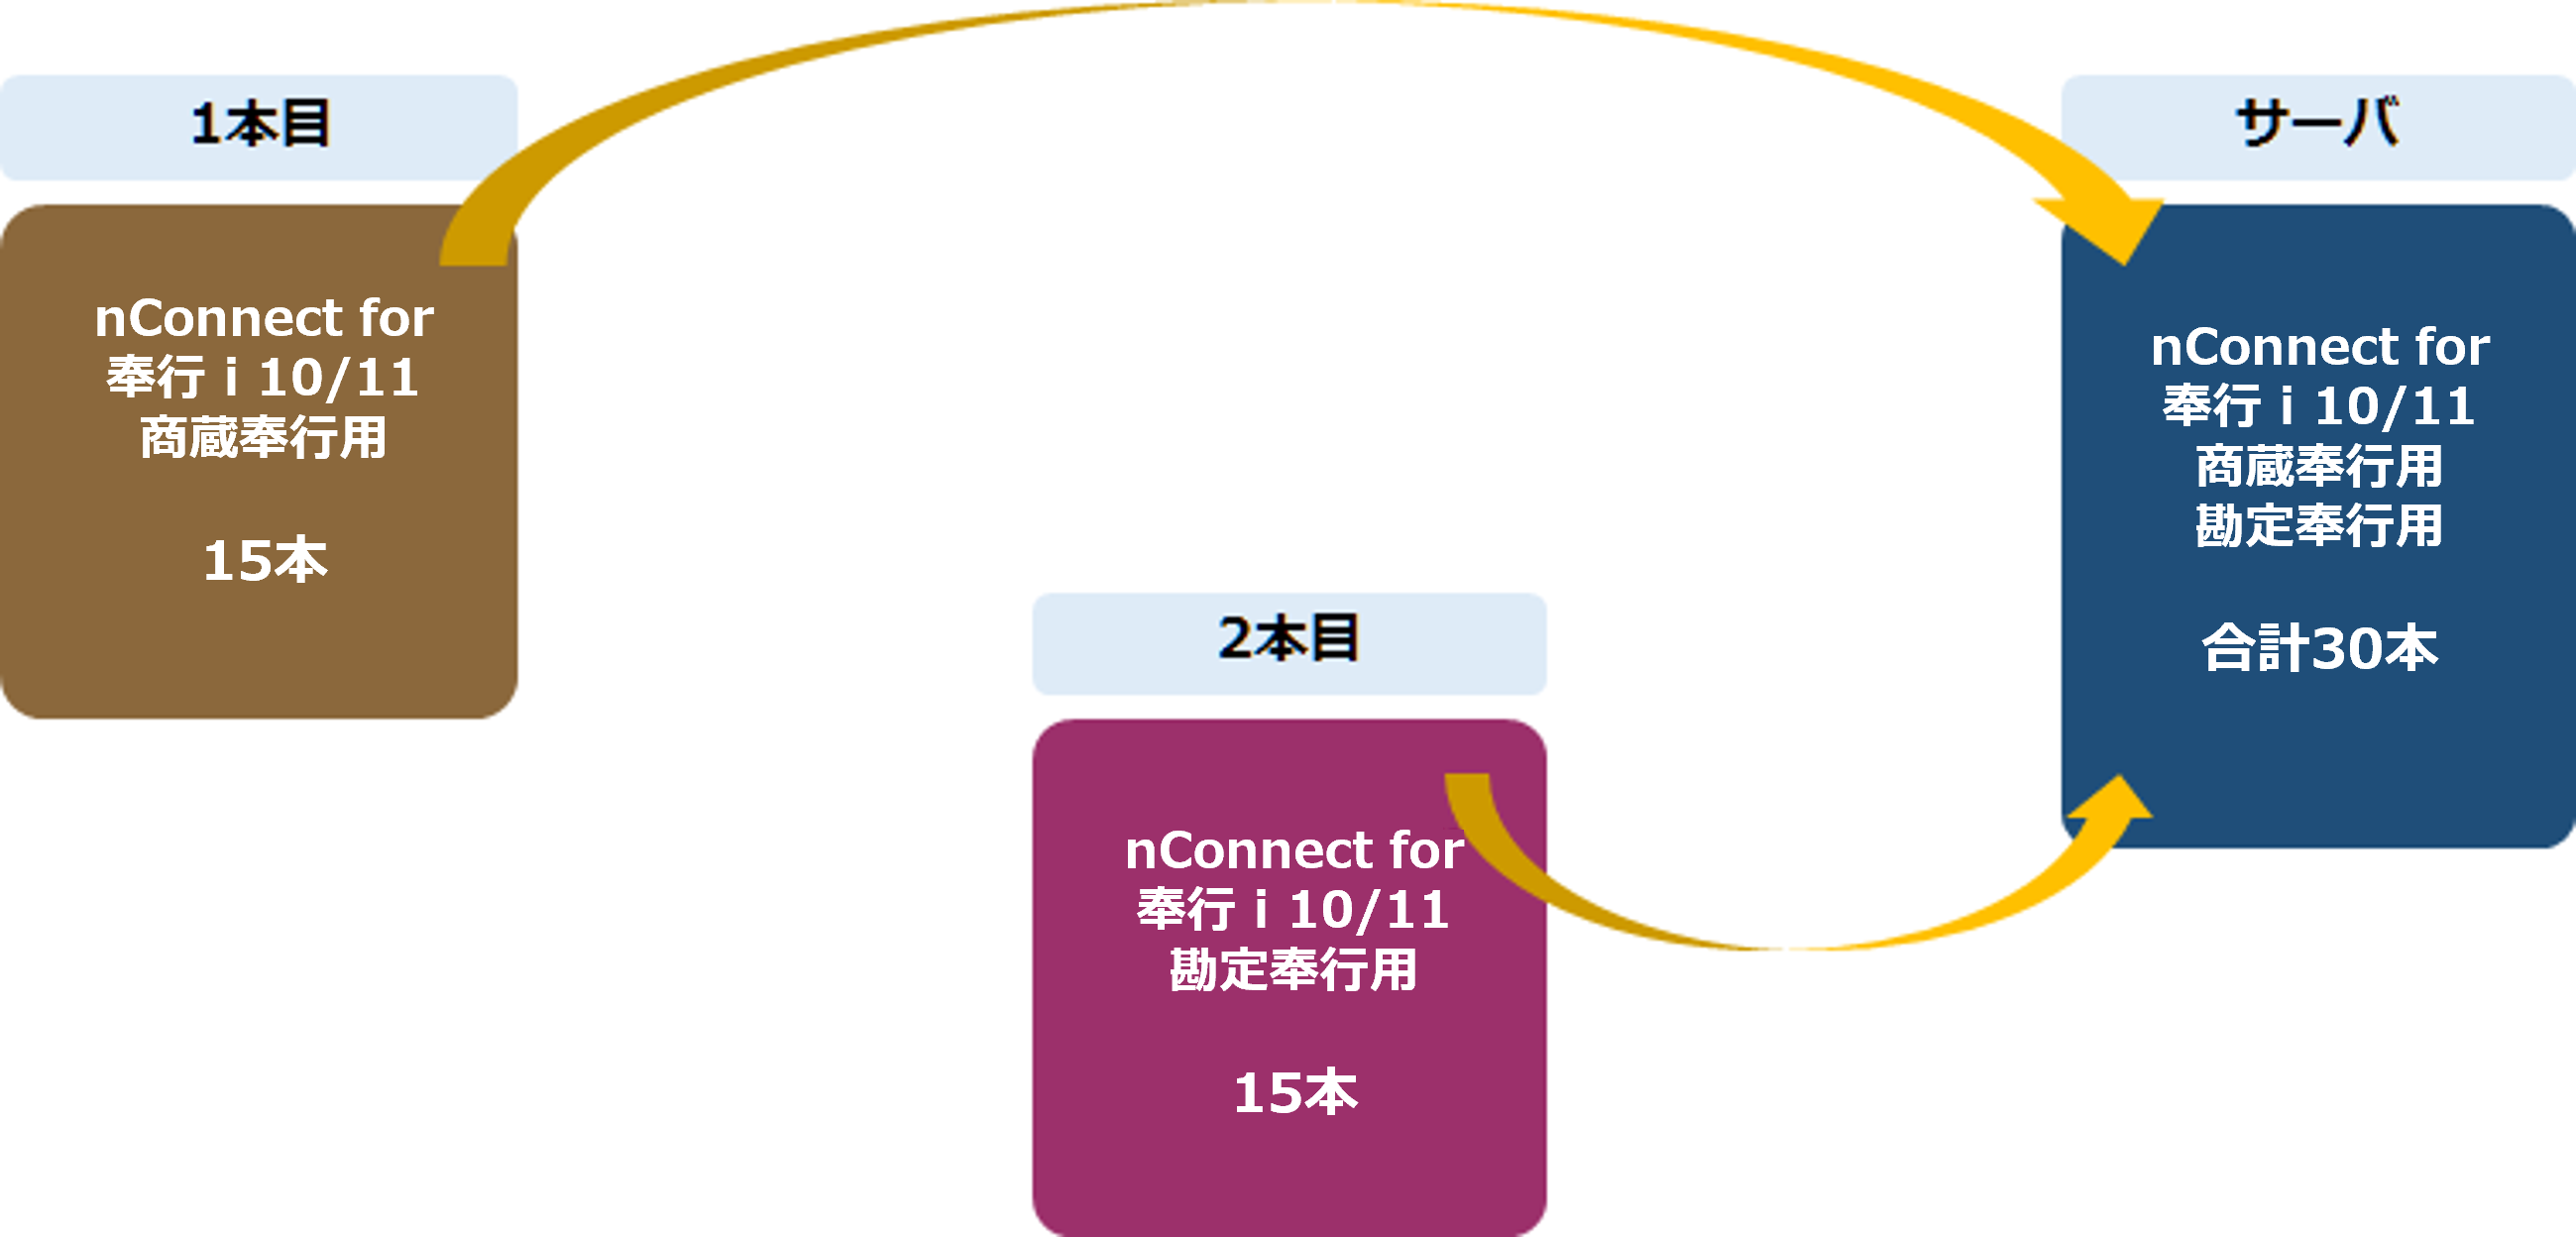 nConnect for 奉行i10・11シリーズで作成可能なスクリプトの本数を増やすことはできますか?